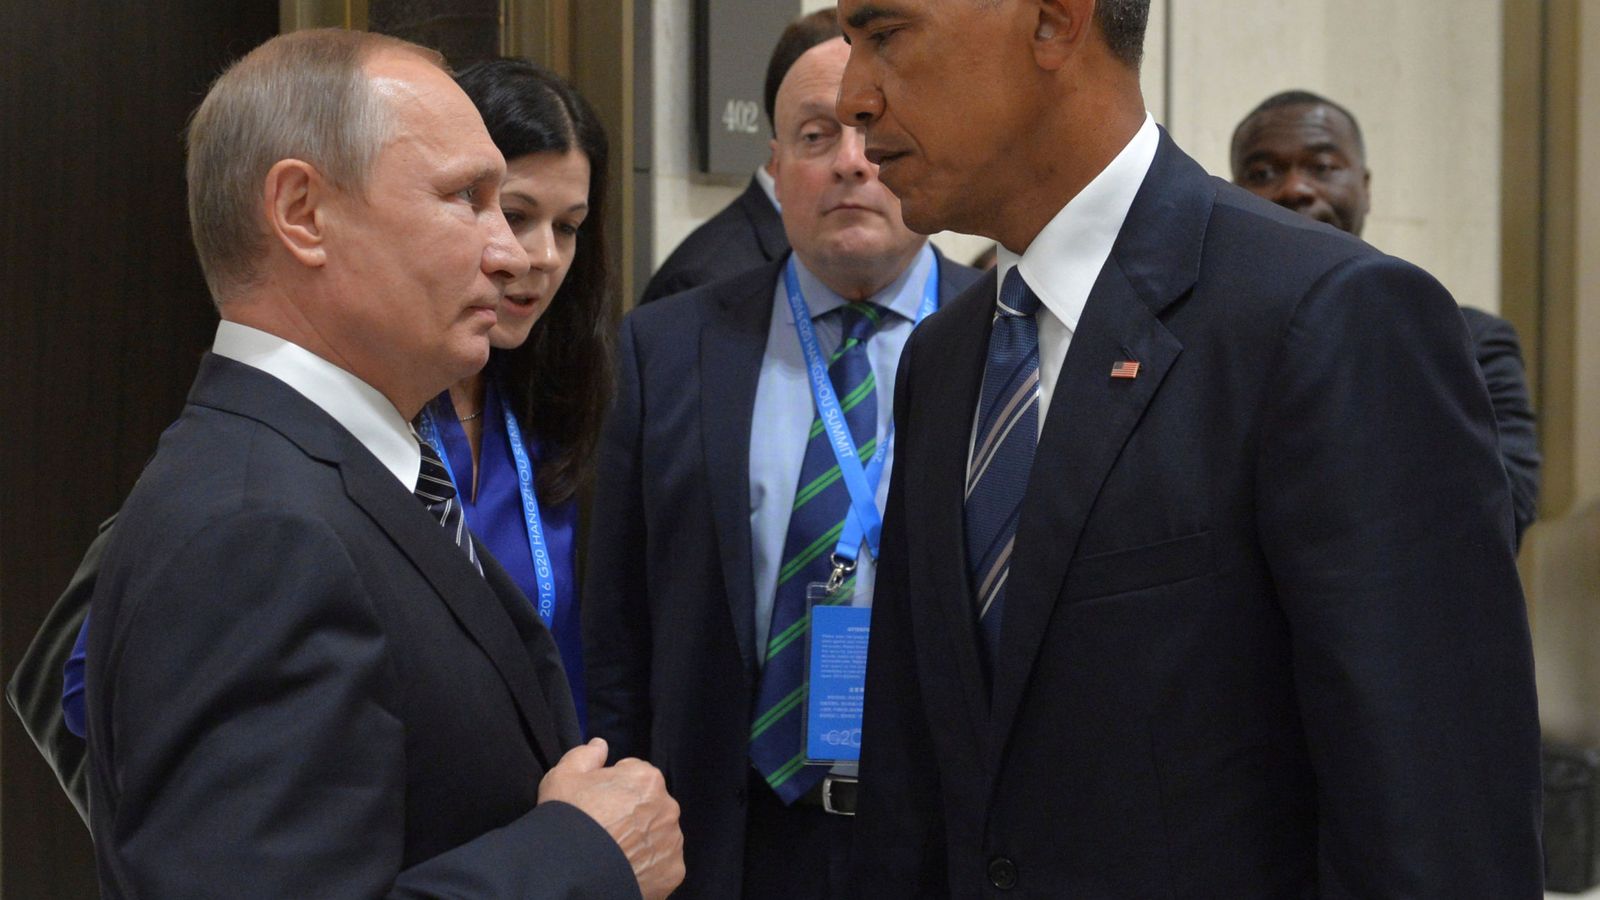 Foto: El presidente ruso Vladimir Putin charla con Barack Obama durante el G20, en Hangzhou, China (Efe). 